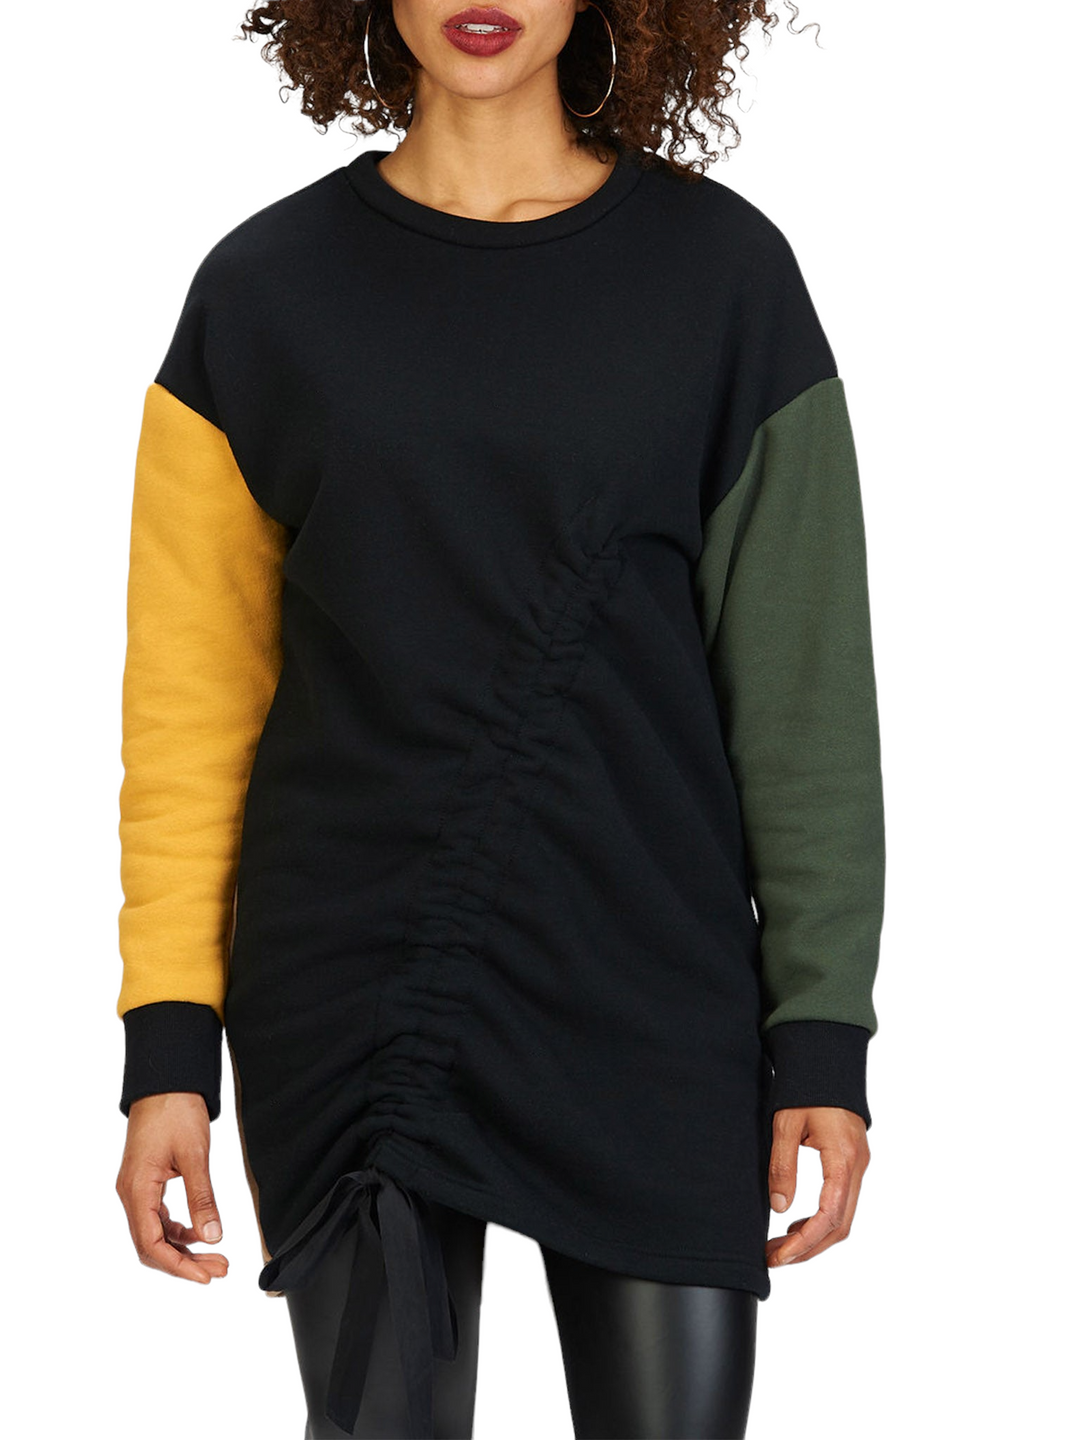 Color Block Sweatshirt Dress (25% OFF)